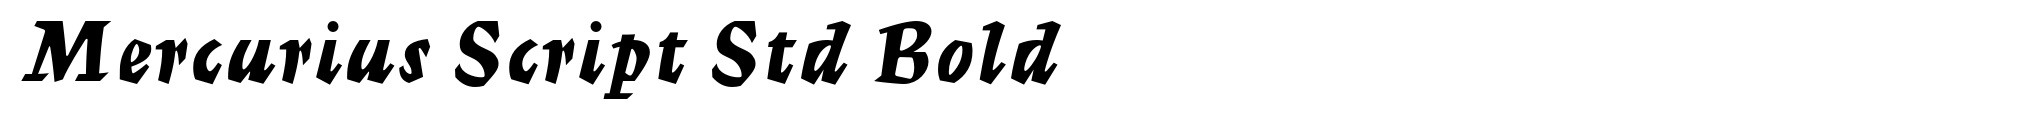 Mercurius Script Std Bold image